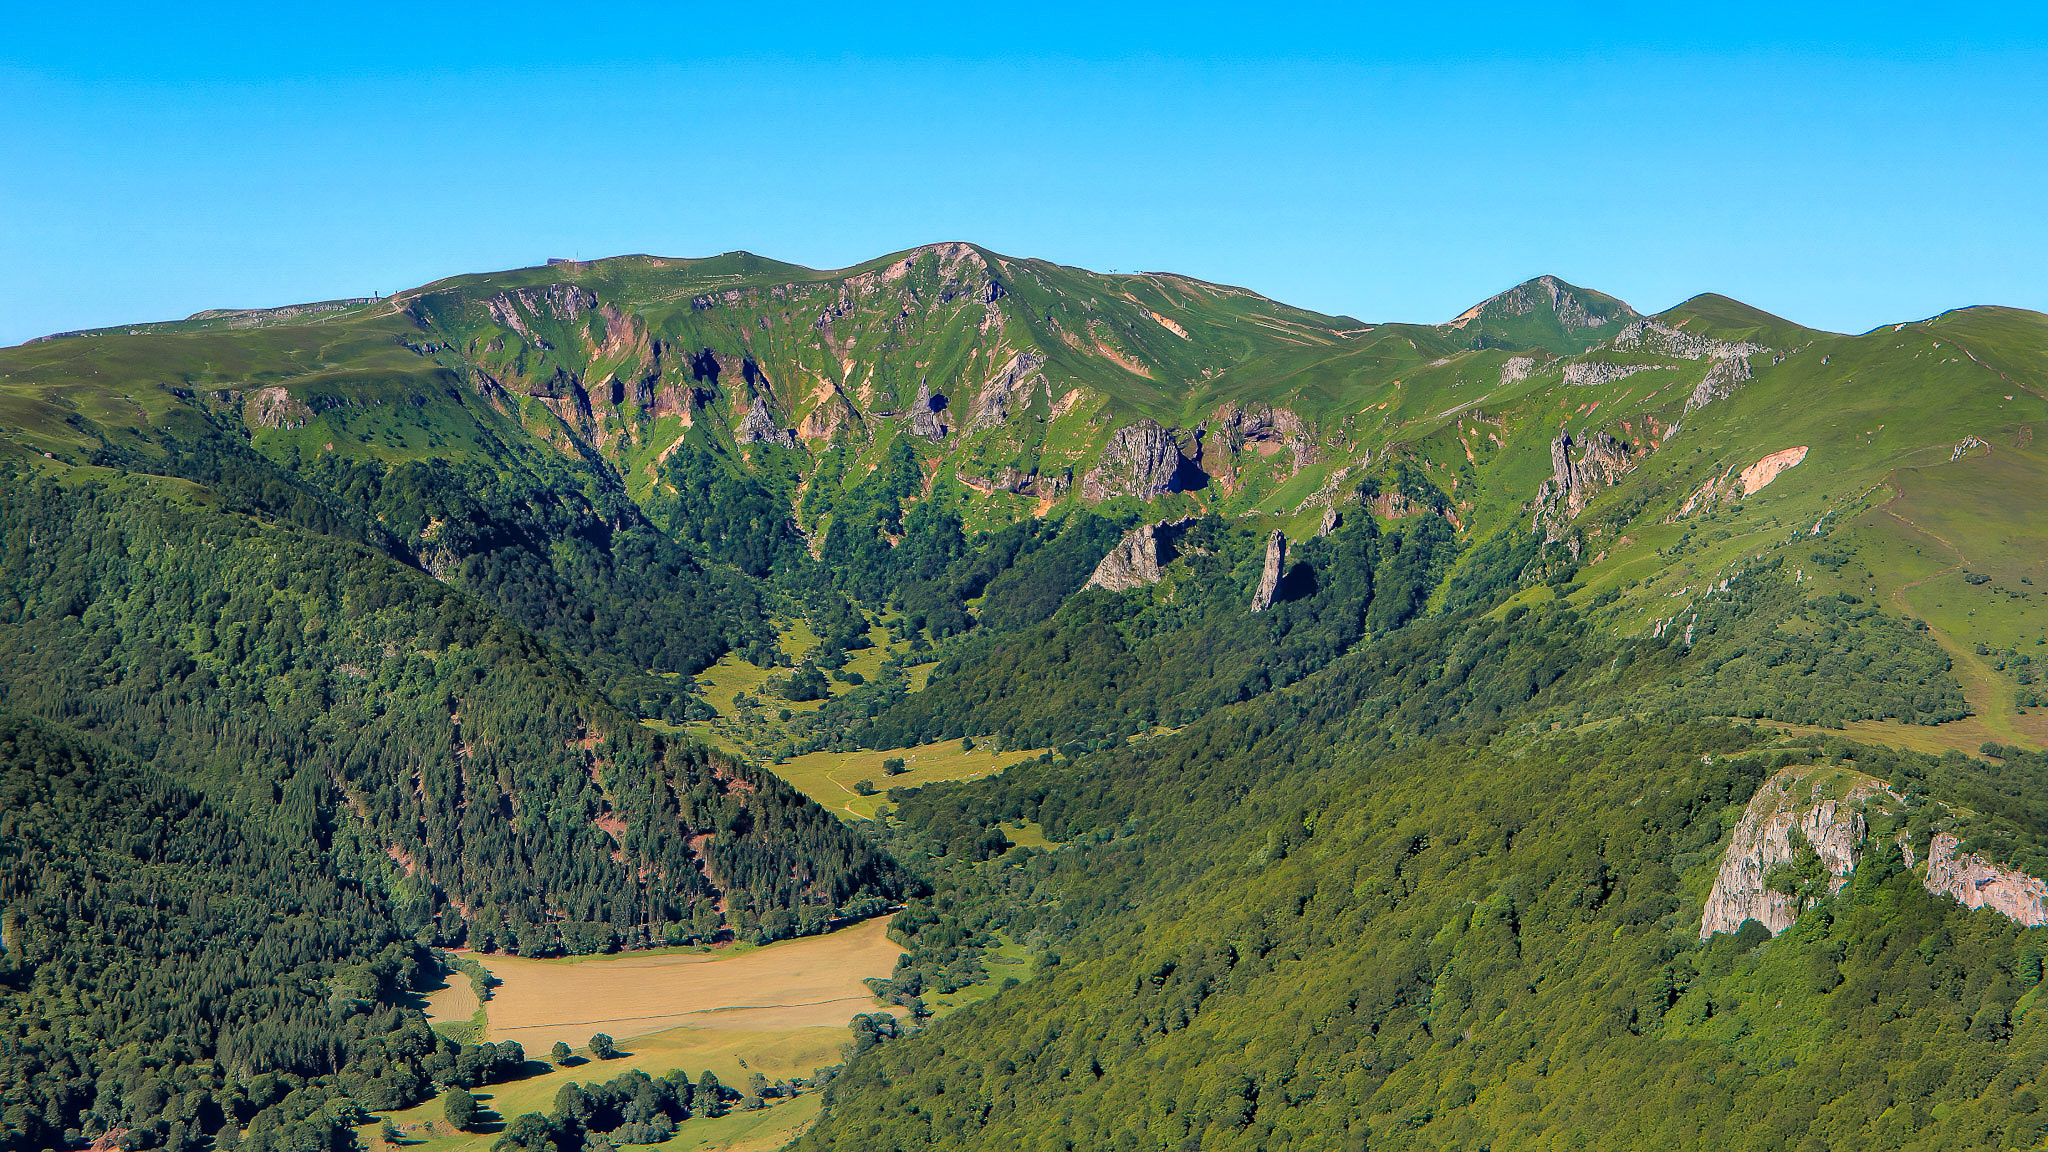 Réserve naturelle nationale de la Vallée de Chaudefour